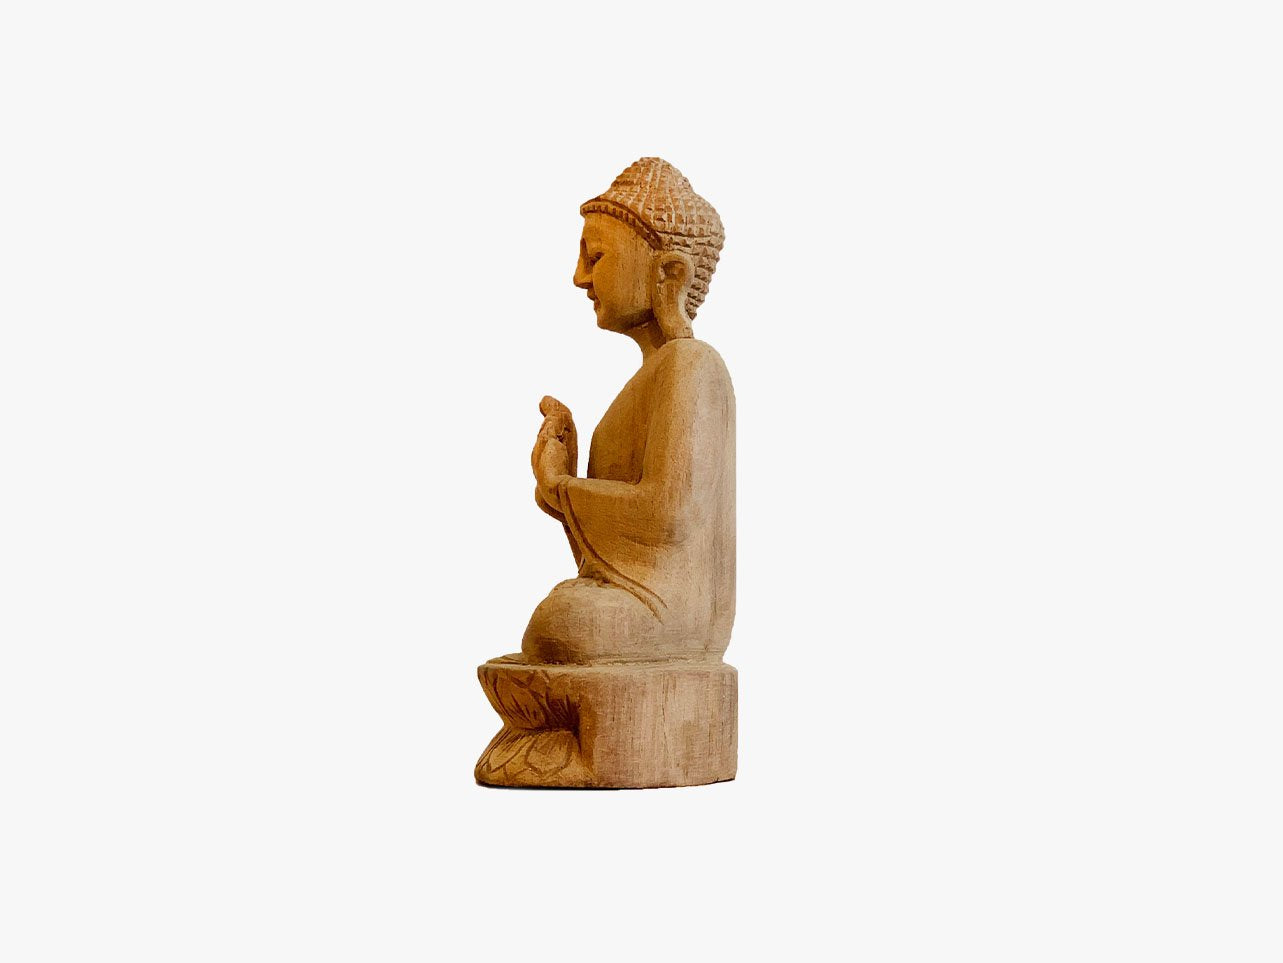 Sitting Buddha - Dharmachakra Mudra